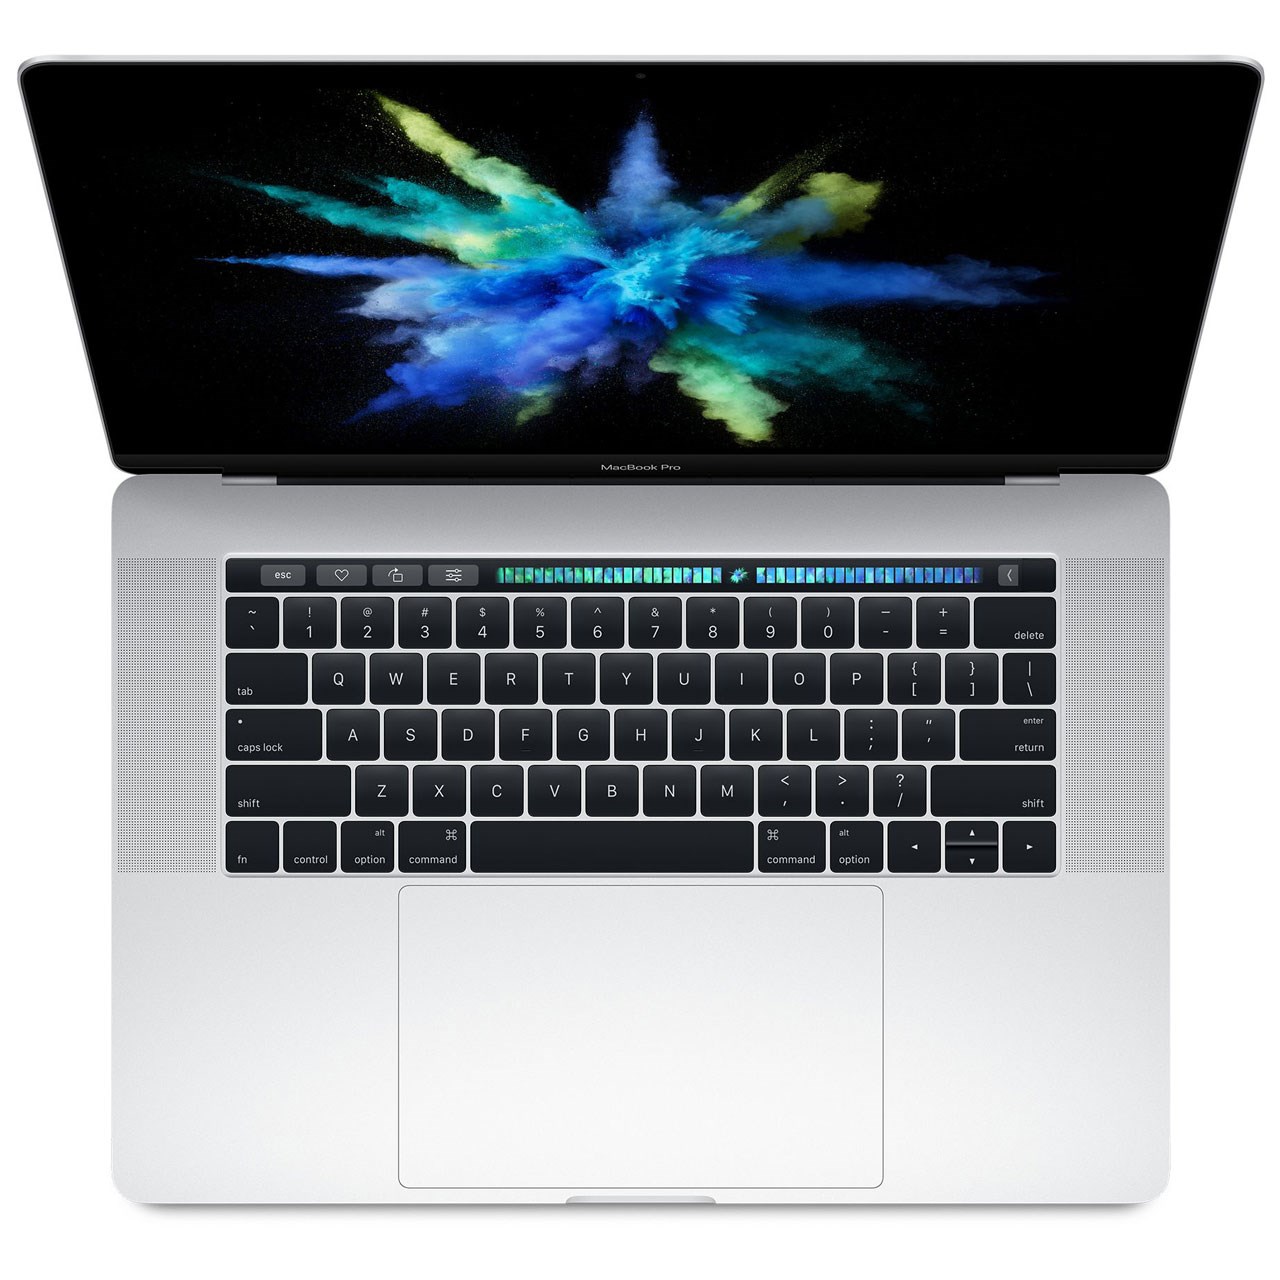 لپ تاپ 15 اینچی اپل مدل  MacBook Pro MLW72  همراه با تاچ بار